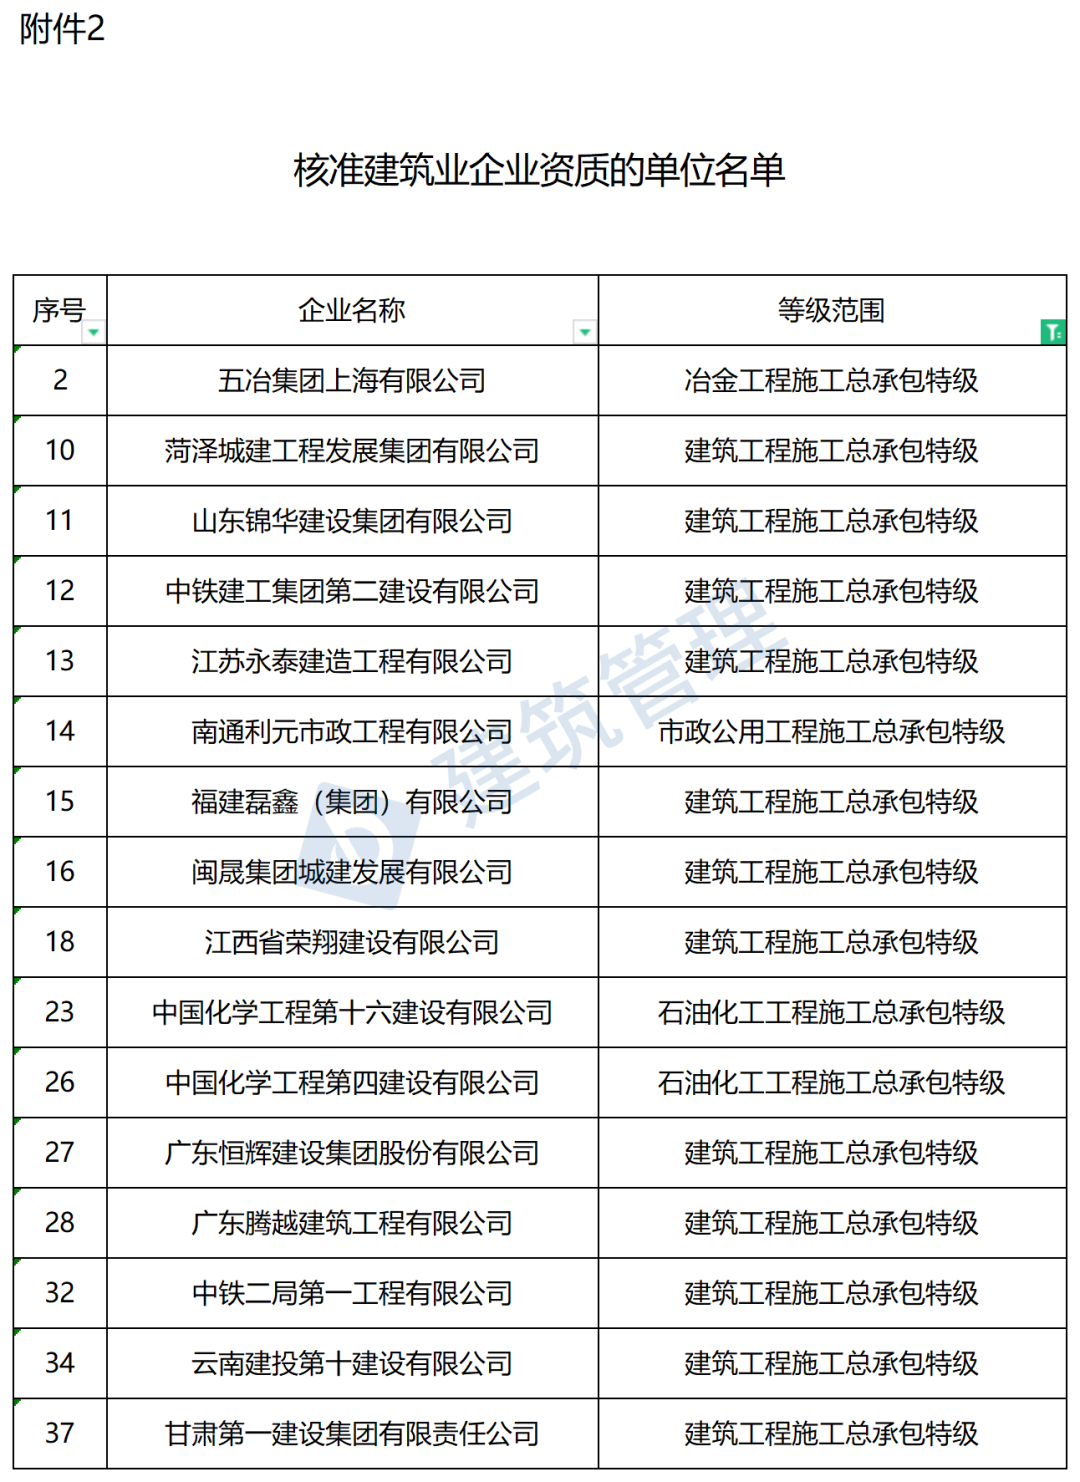 完美体育365wm中国采购与招标网(图1)